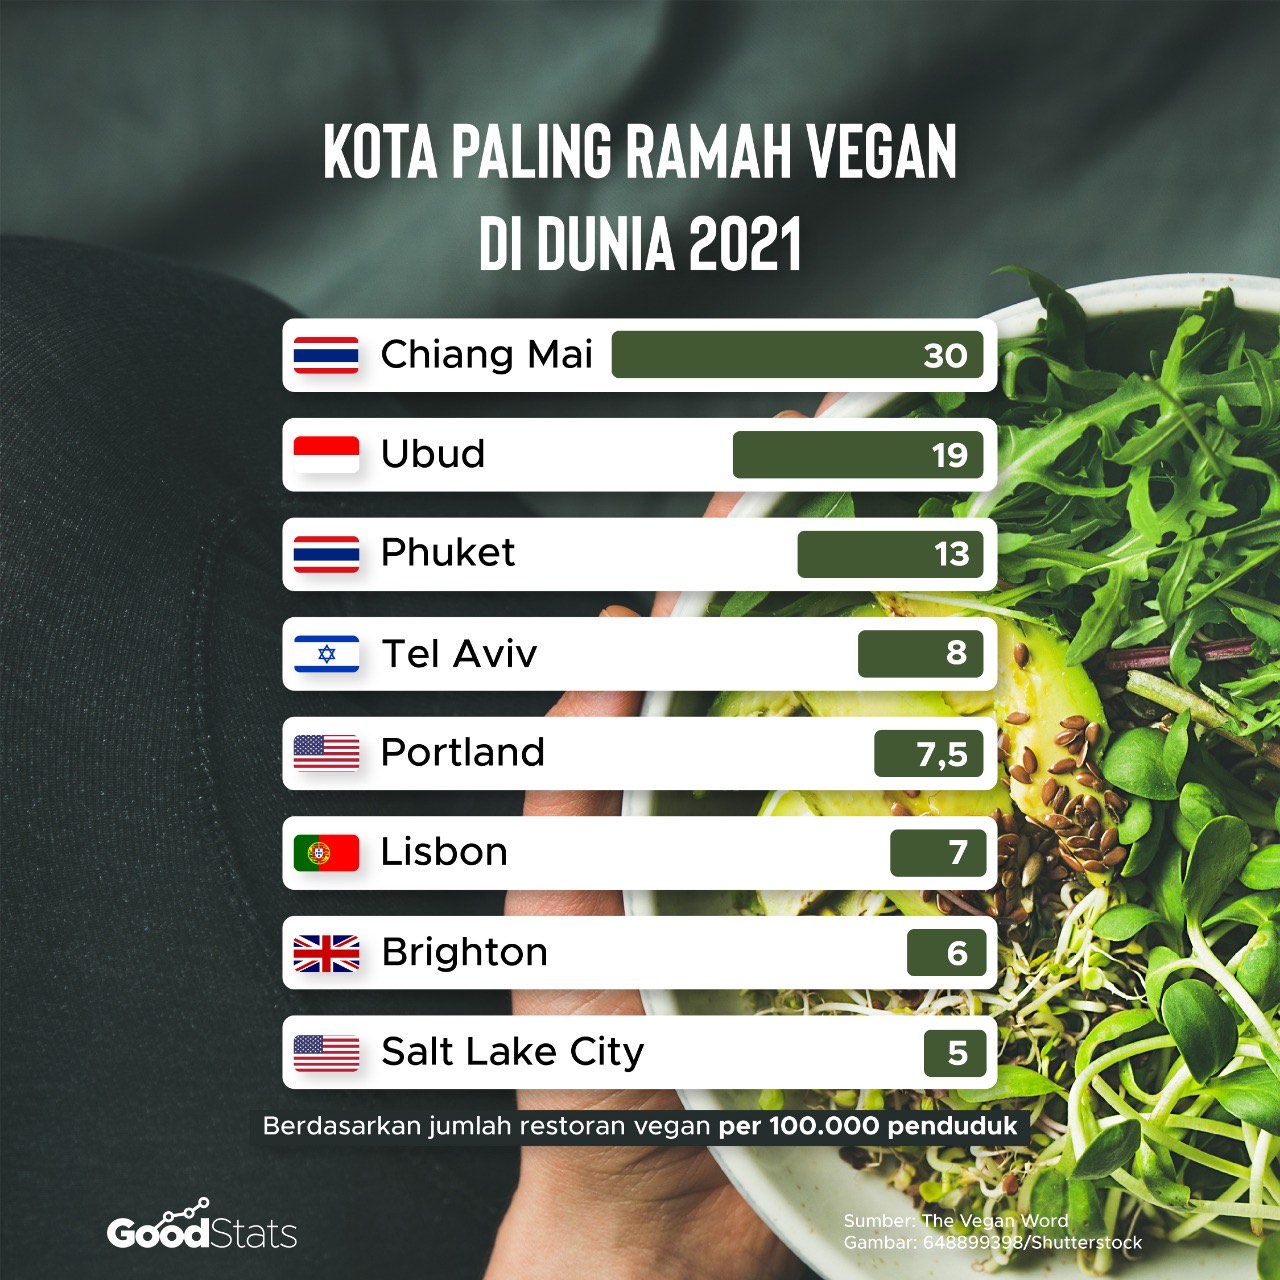 Kota paling ramah vegan di dunia 2021 | GoodStats